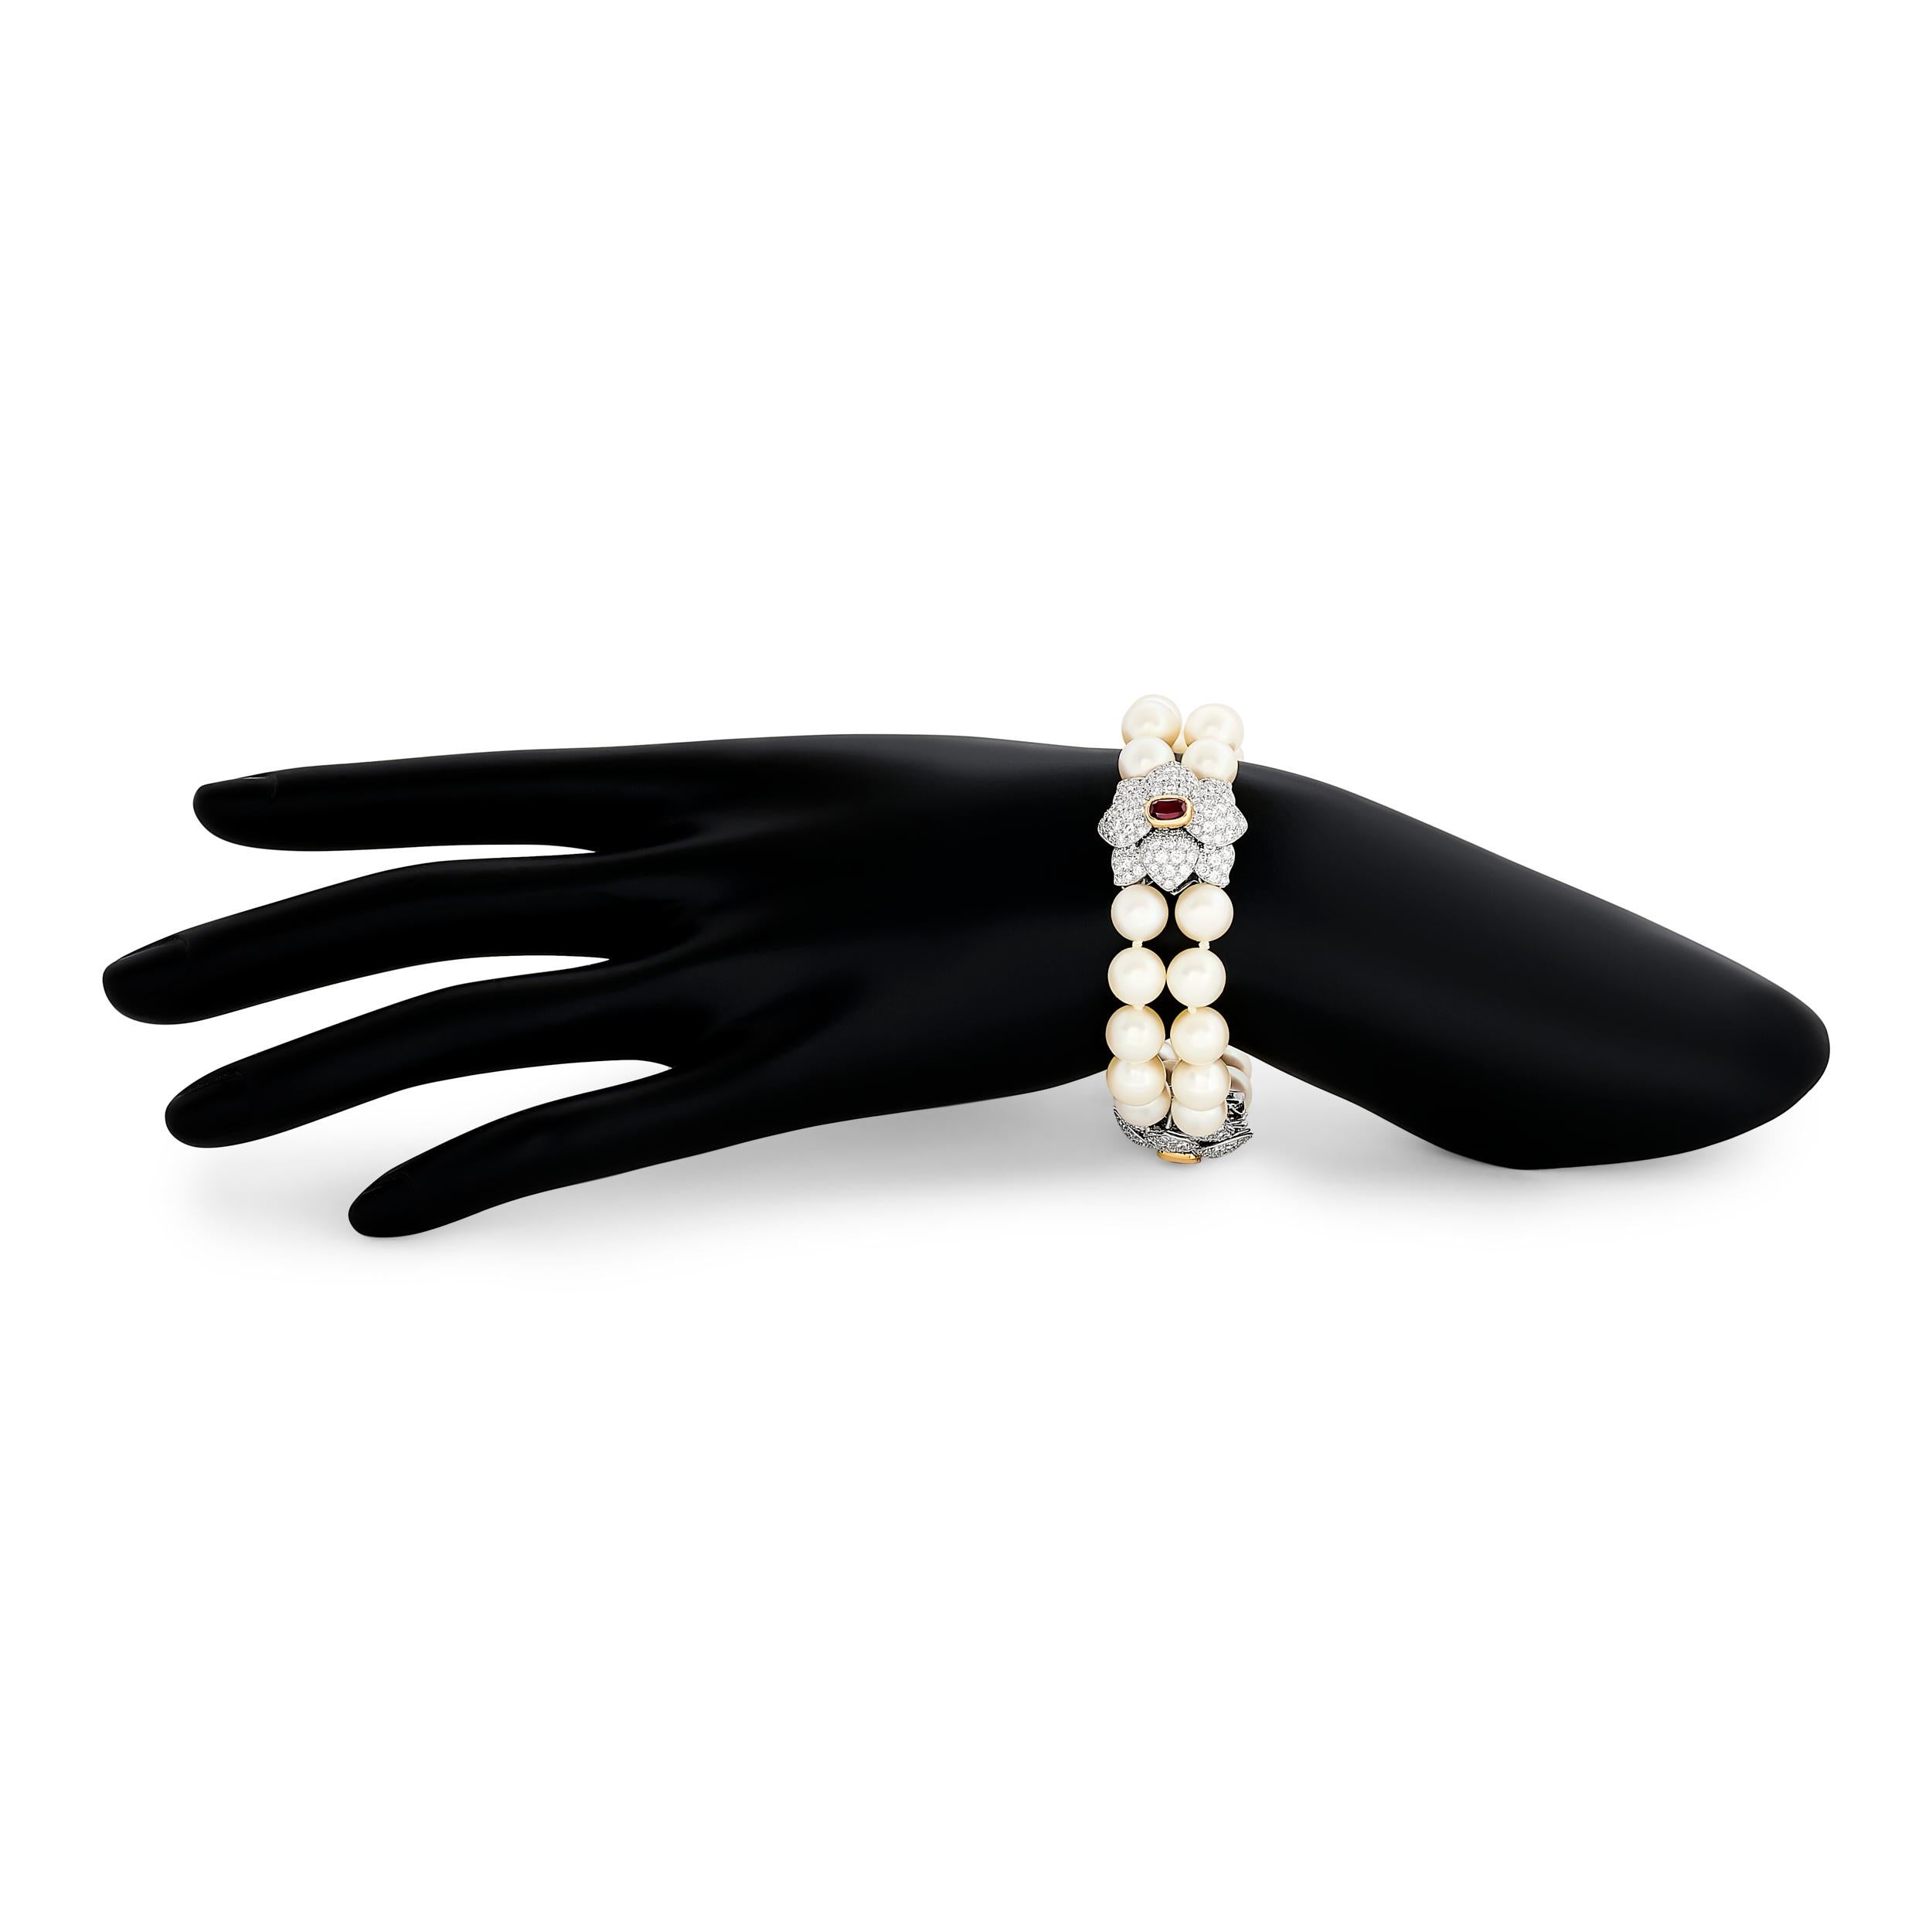 Un bracelet en platine de Tiffany & Co., orné de deux rangées de perles brillantes et de trois délicates fleurs en diamant, chacune dotée d'un centre en rubis captivant.

30 perles ~8.75-8.80mm
3 rubis ovales d'un poids total de 1,80 carat
diamants